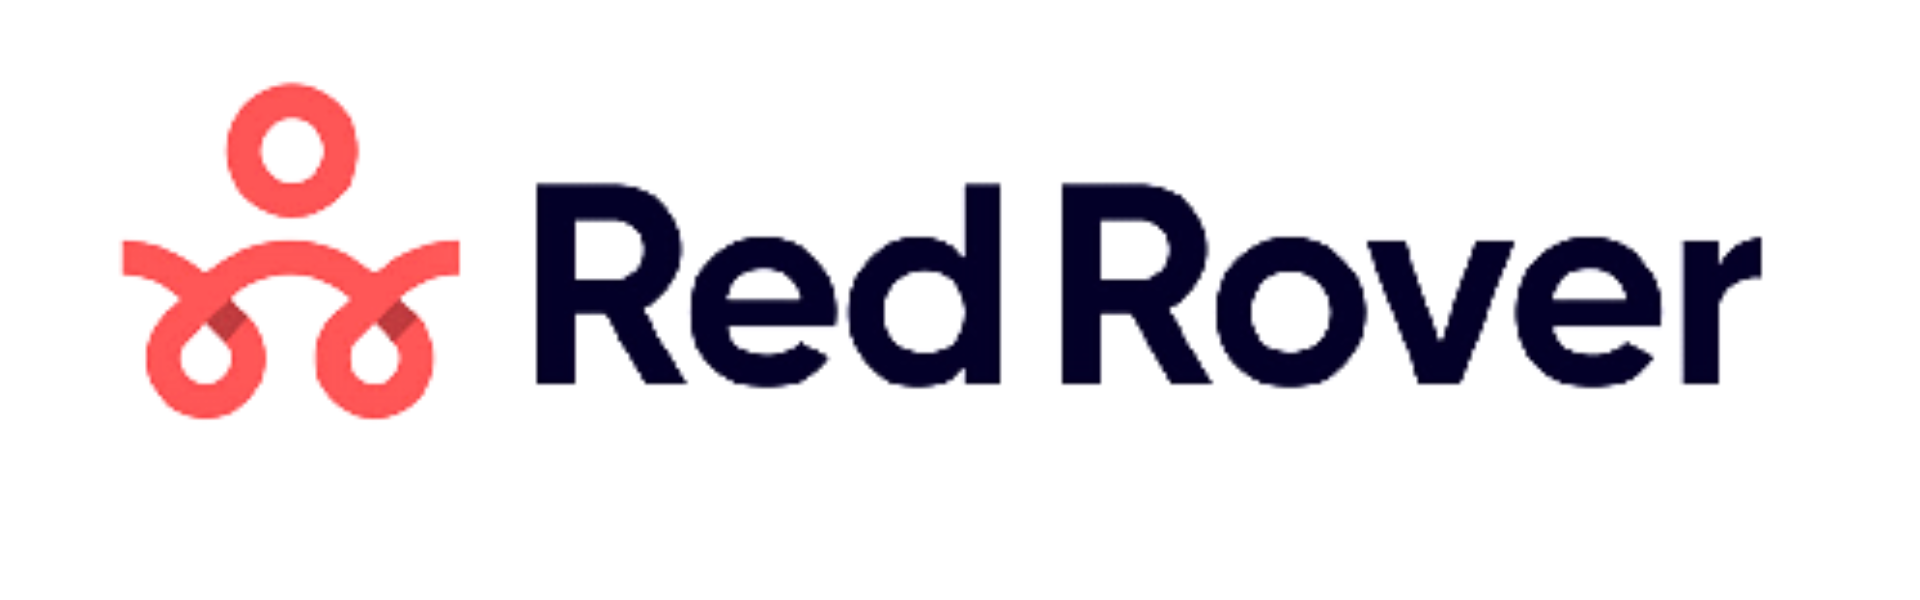 RedRover_logo